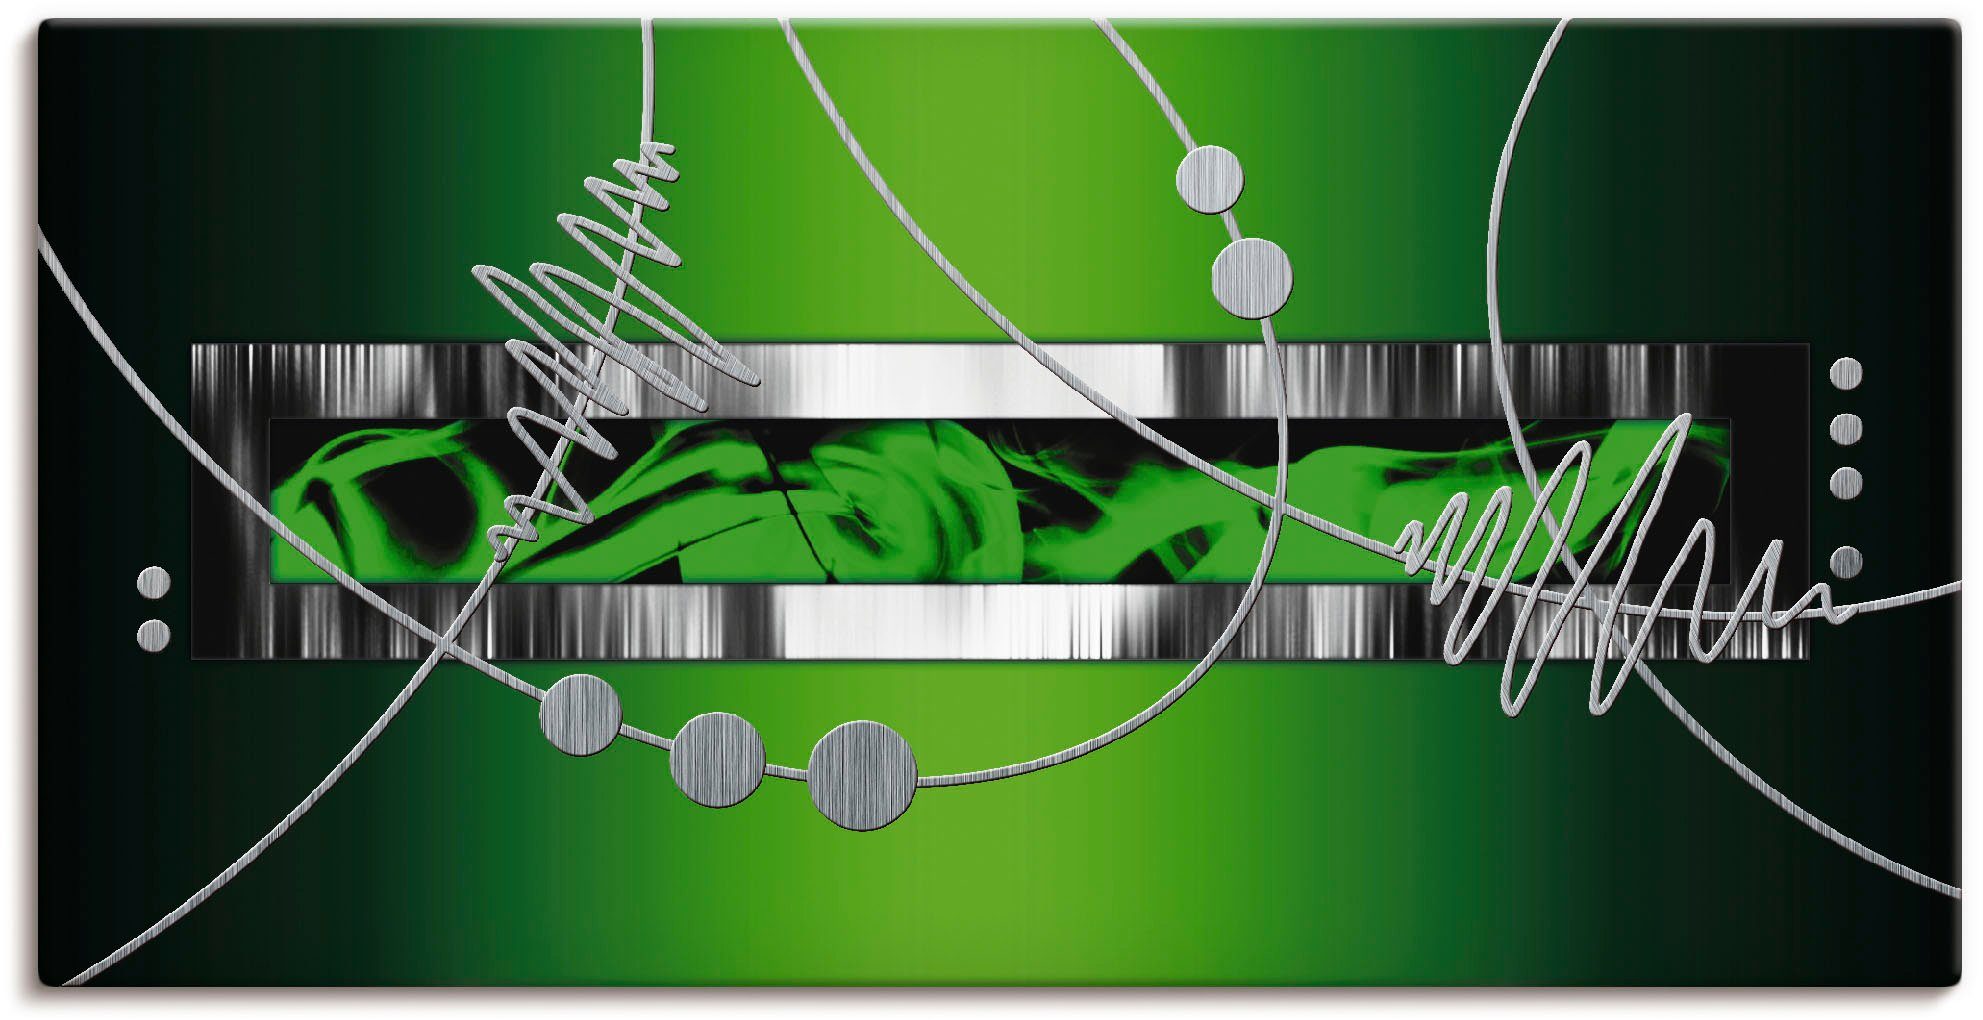 Artland Artprint Zilver abstract op groen in vele afmetingen & productsoorten - artprint van aluminium / artprint voor buiten, artprint op linnen, poster, muursticker / wandfolie o